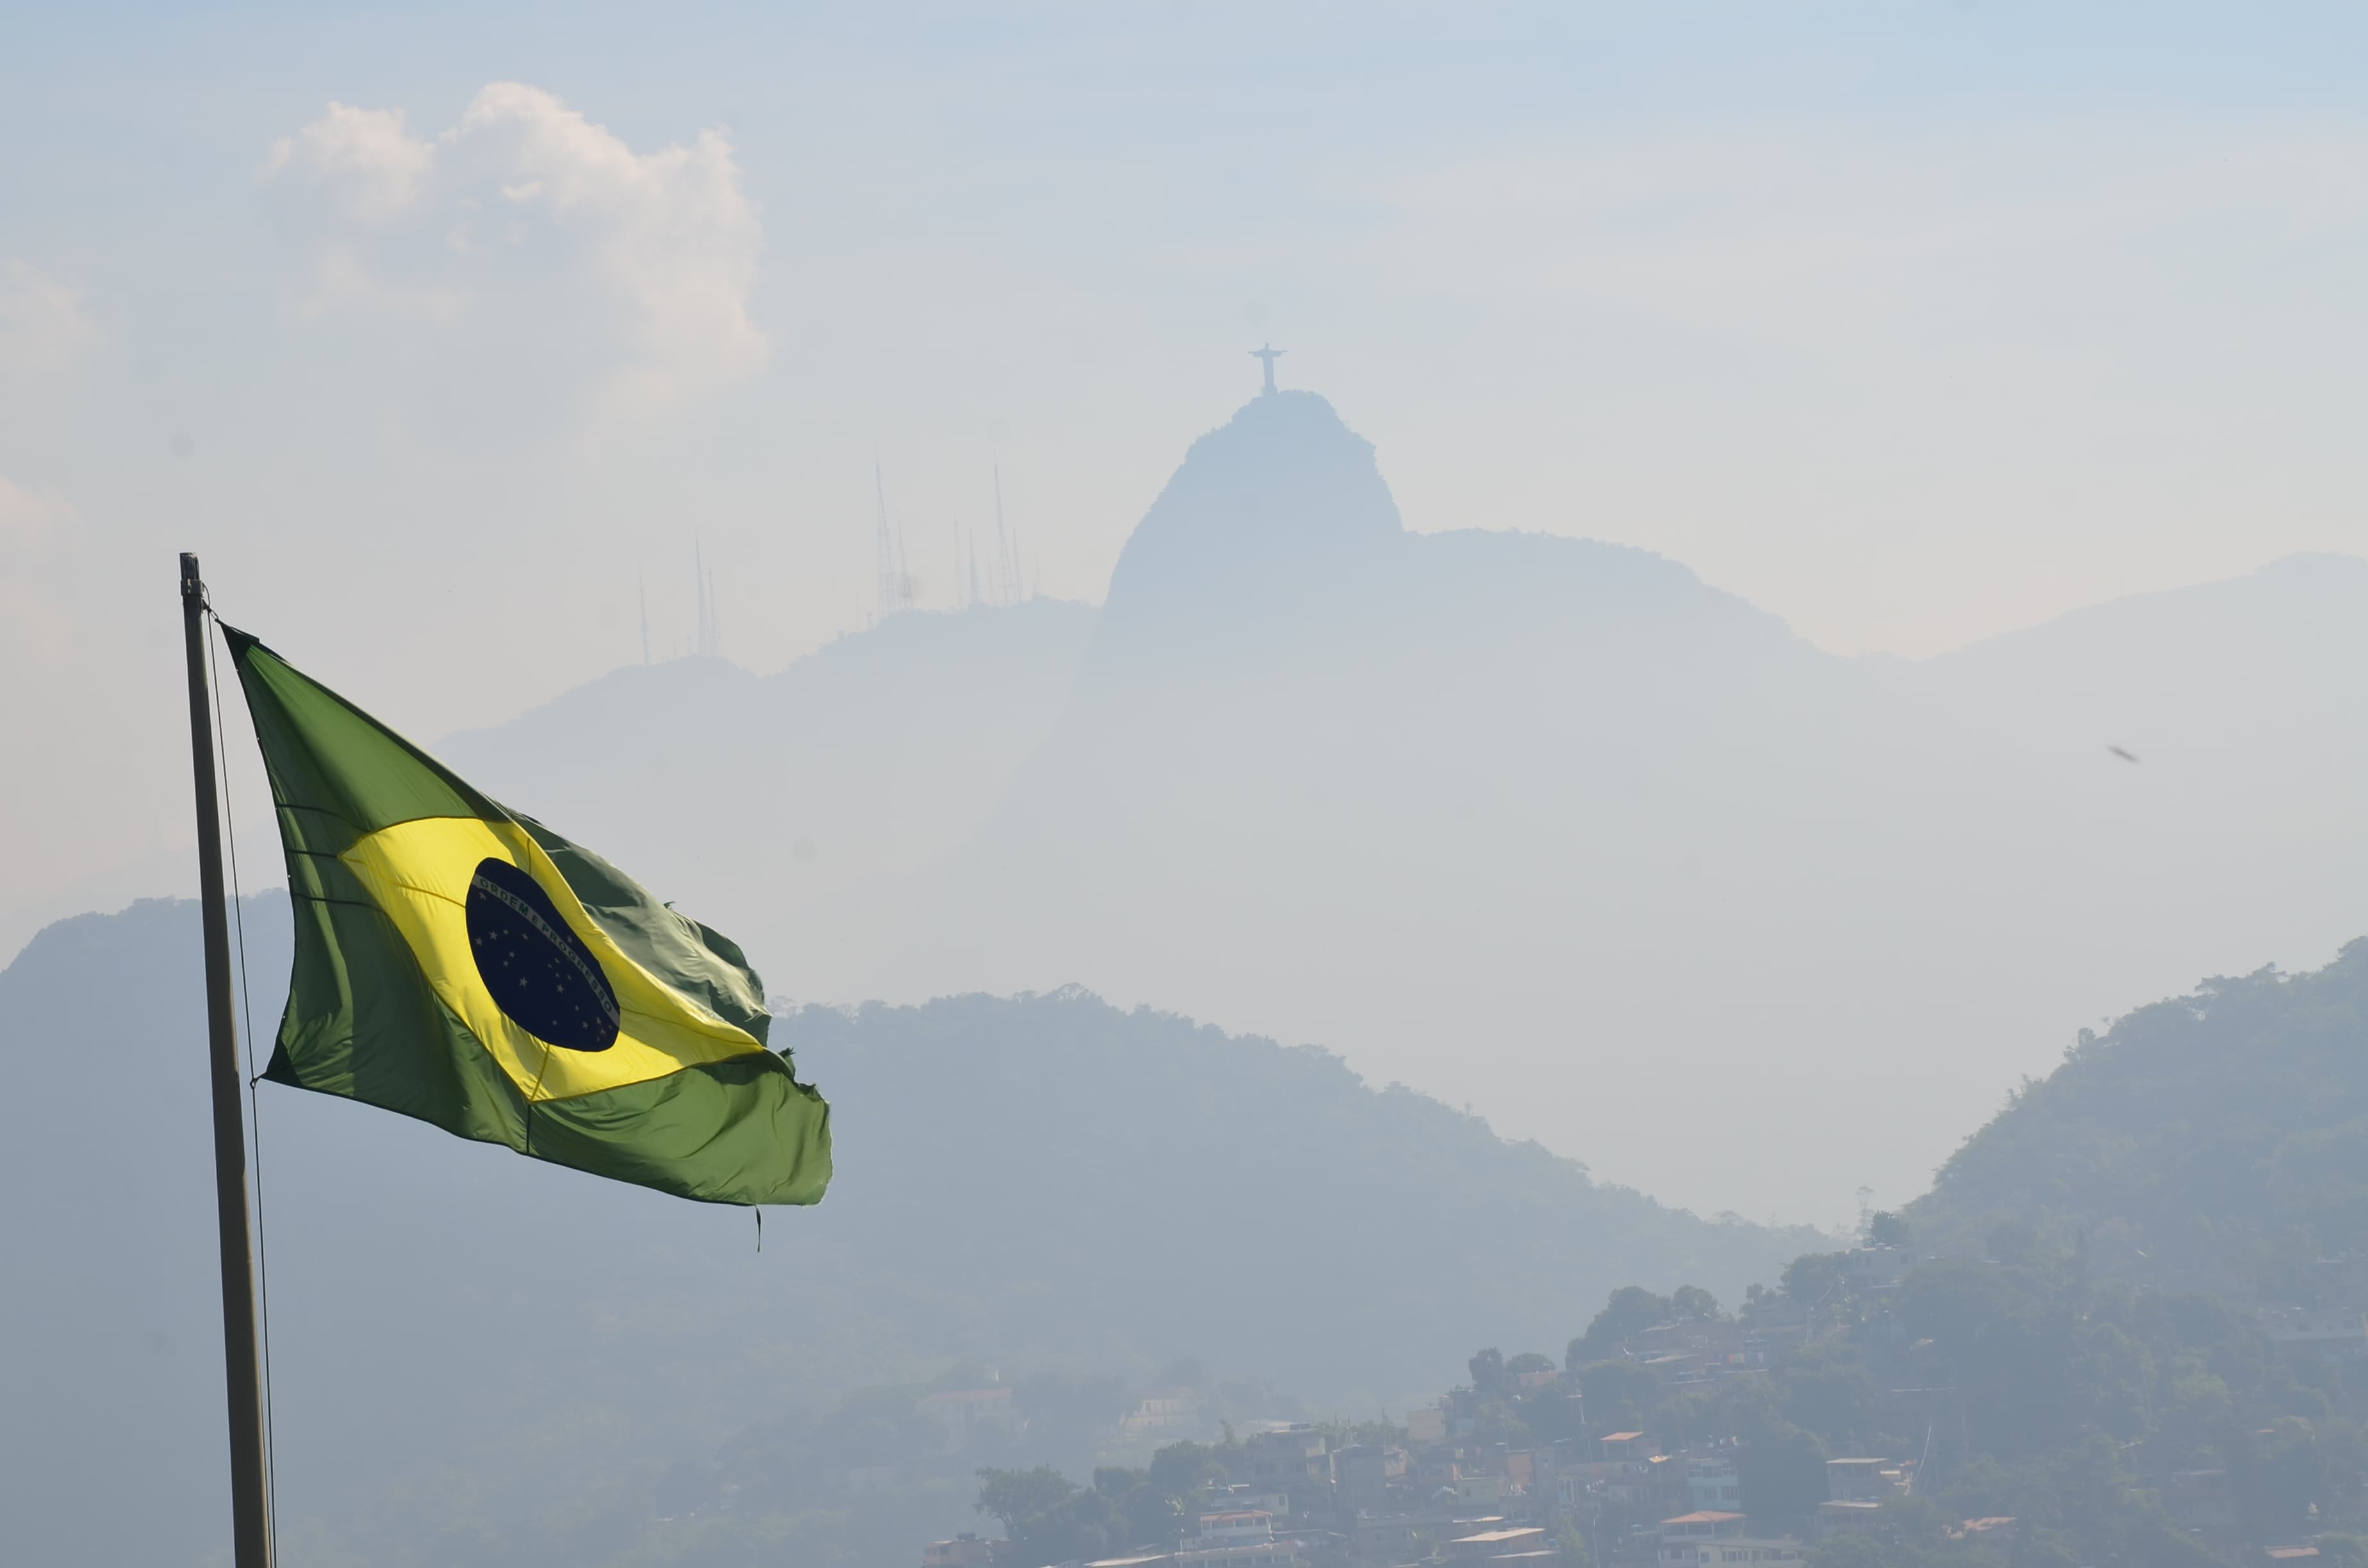 View of Corcovado from Forte Duque de Caxias in Rio de Janeiro, Brazil